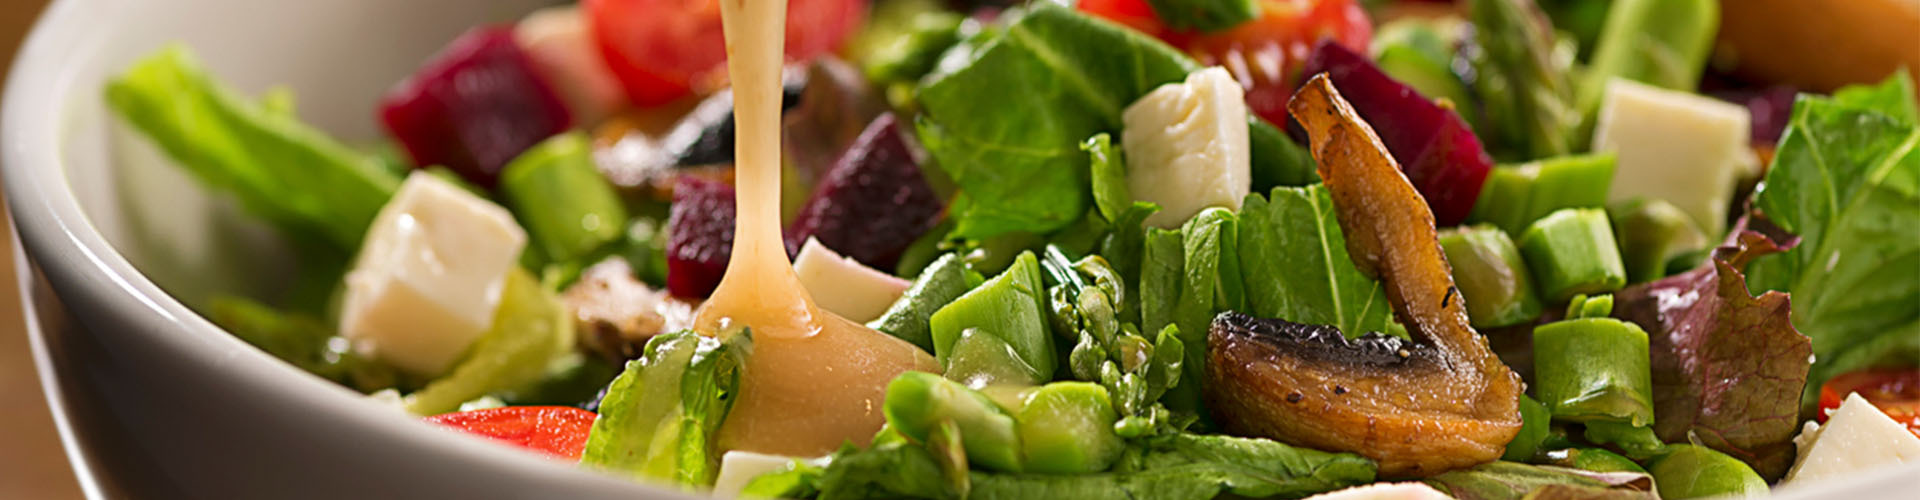 Molho de manga para salada sendo derramado em um mix de folhas e outros legumes